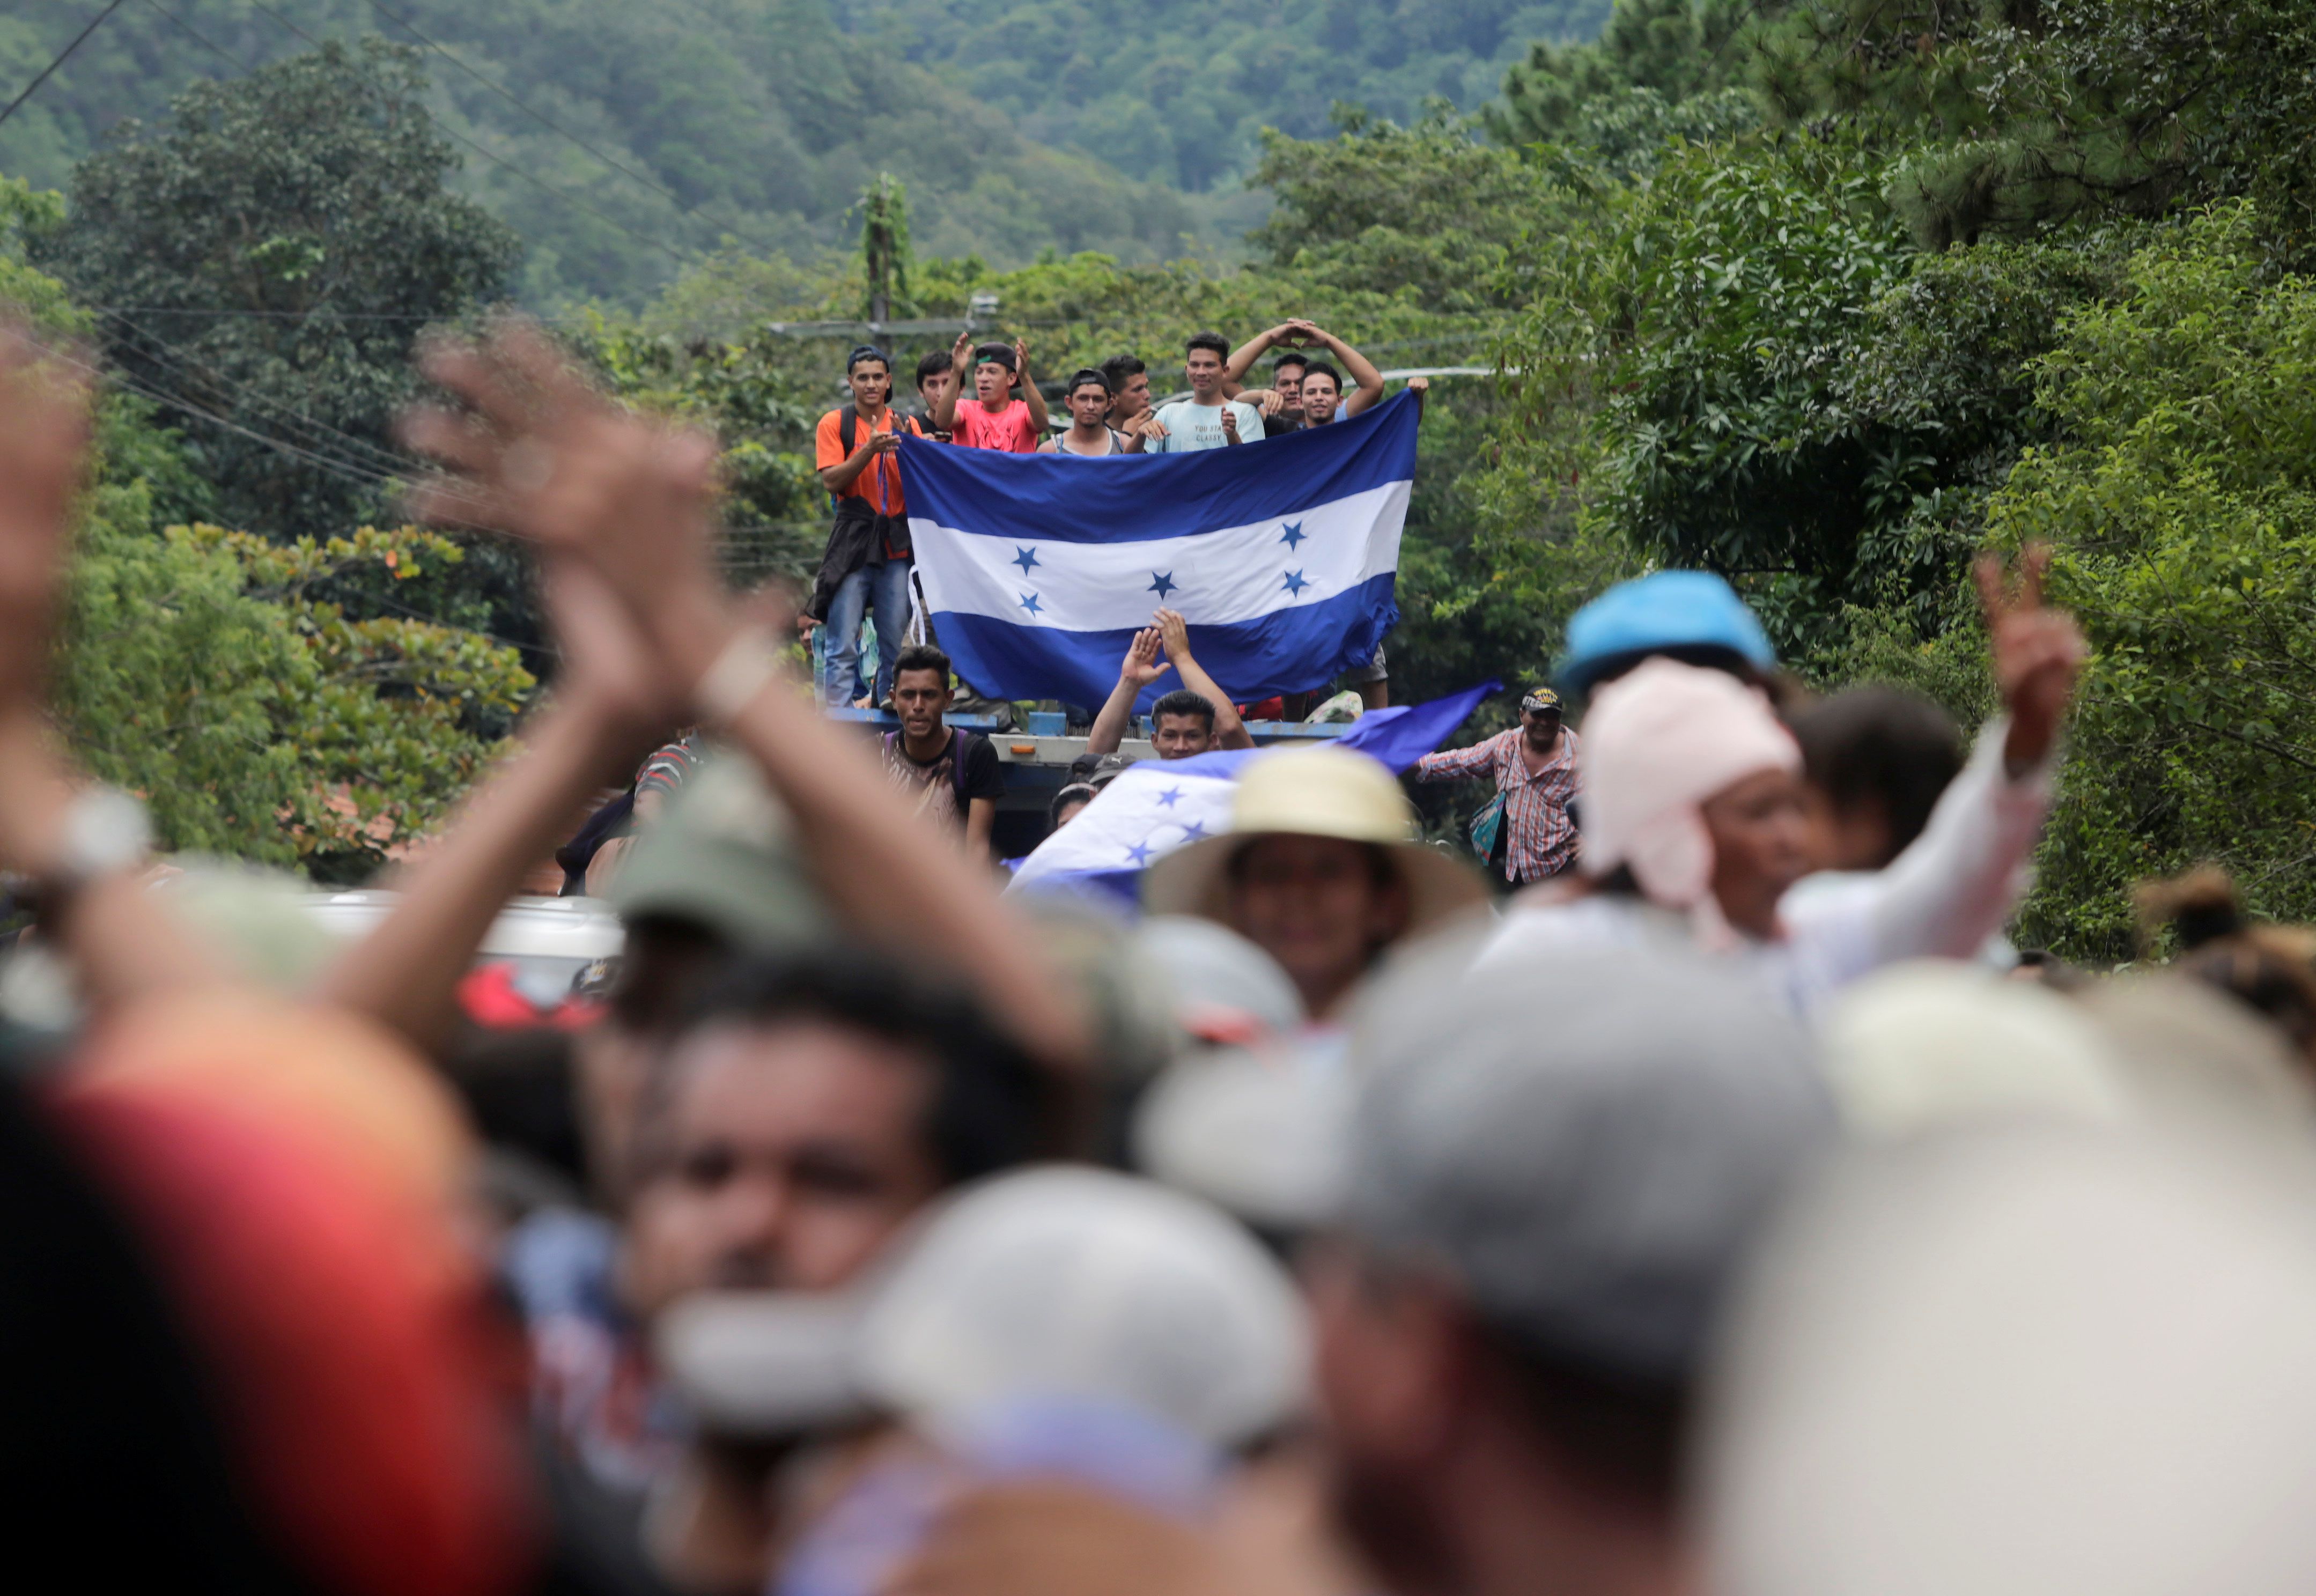 La caravana de migrantes partió el sábado 13 de octubre, de San Pedro Sula, Honduras, con destino a Estados Unidos.